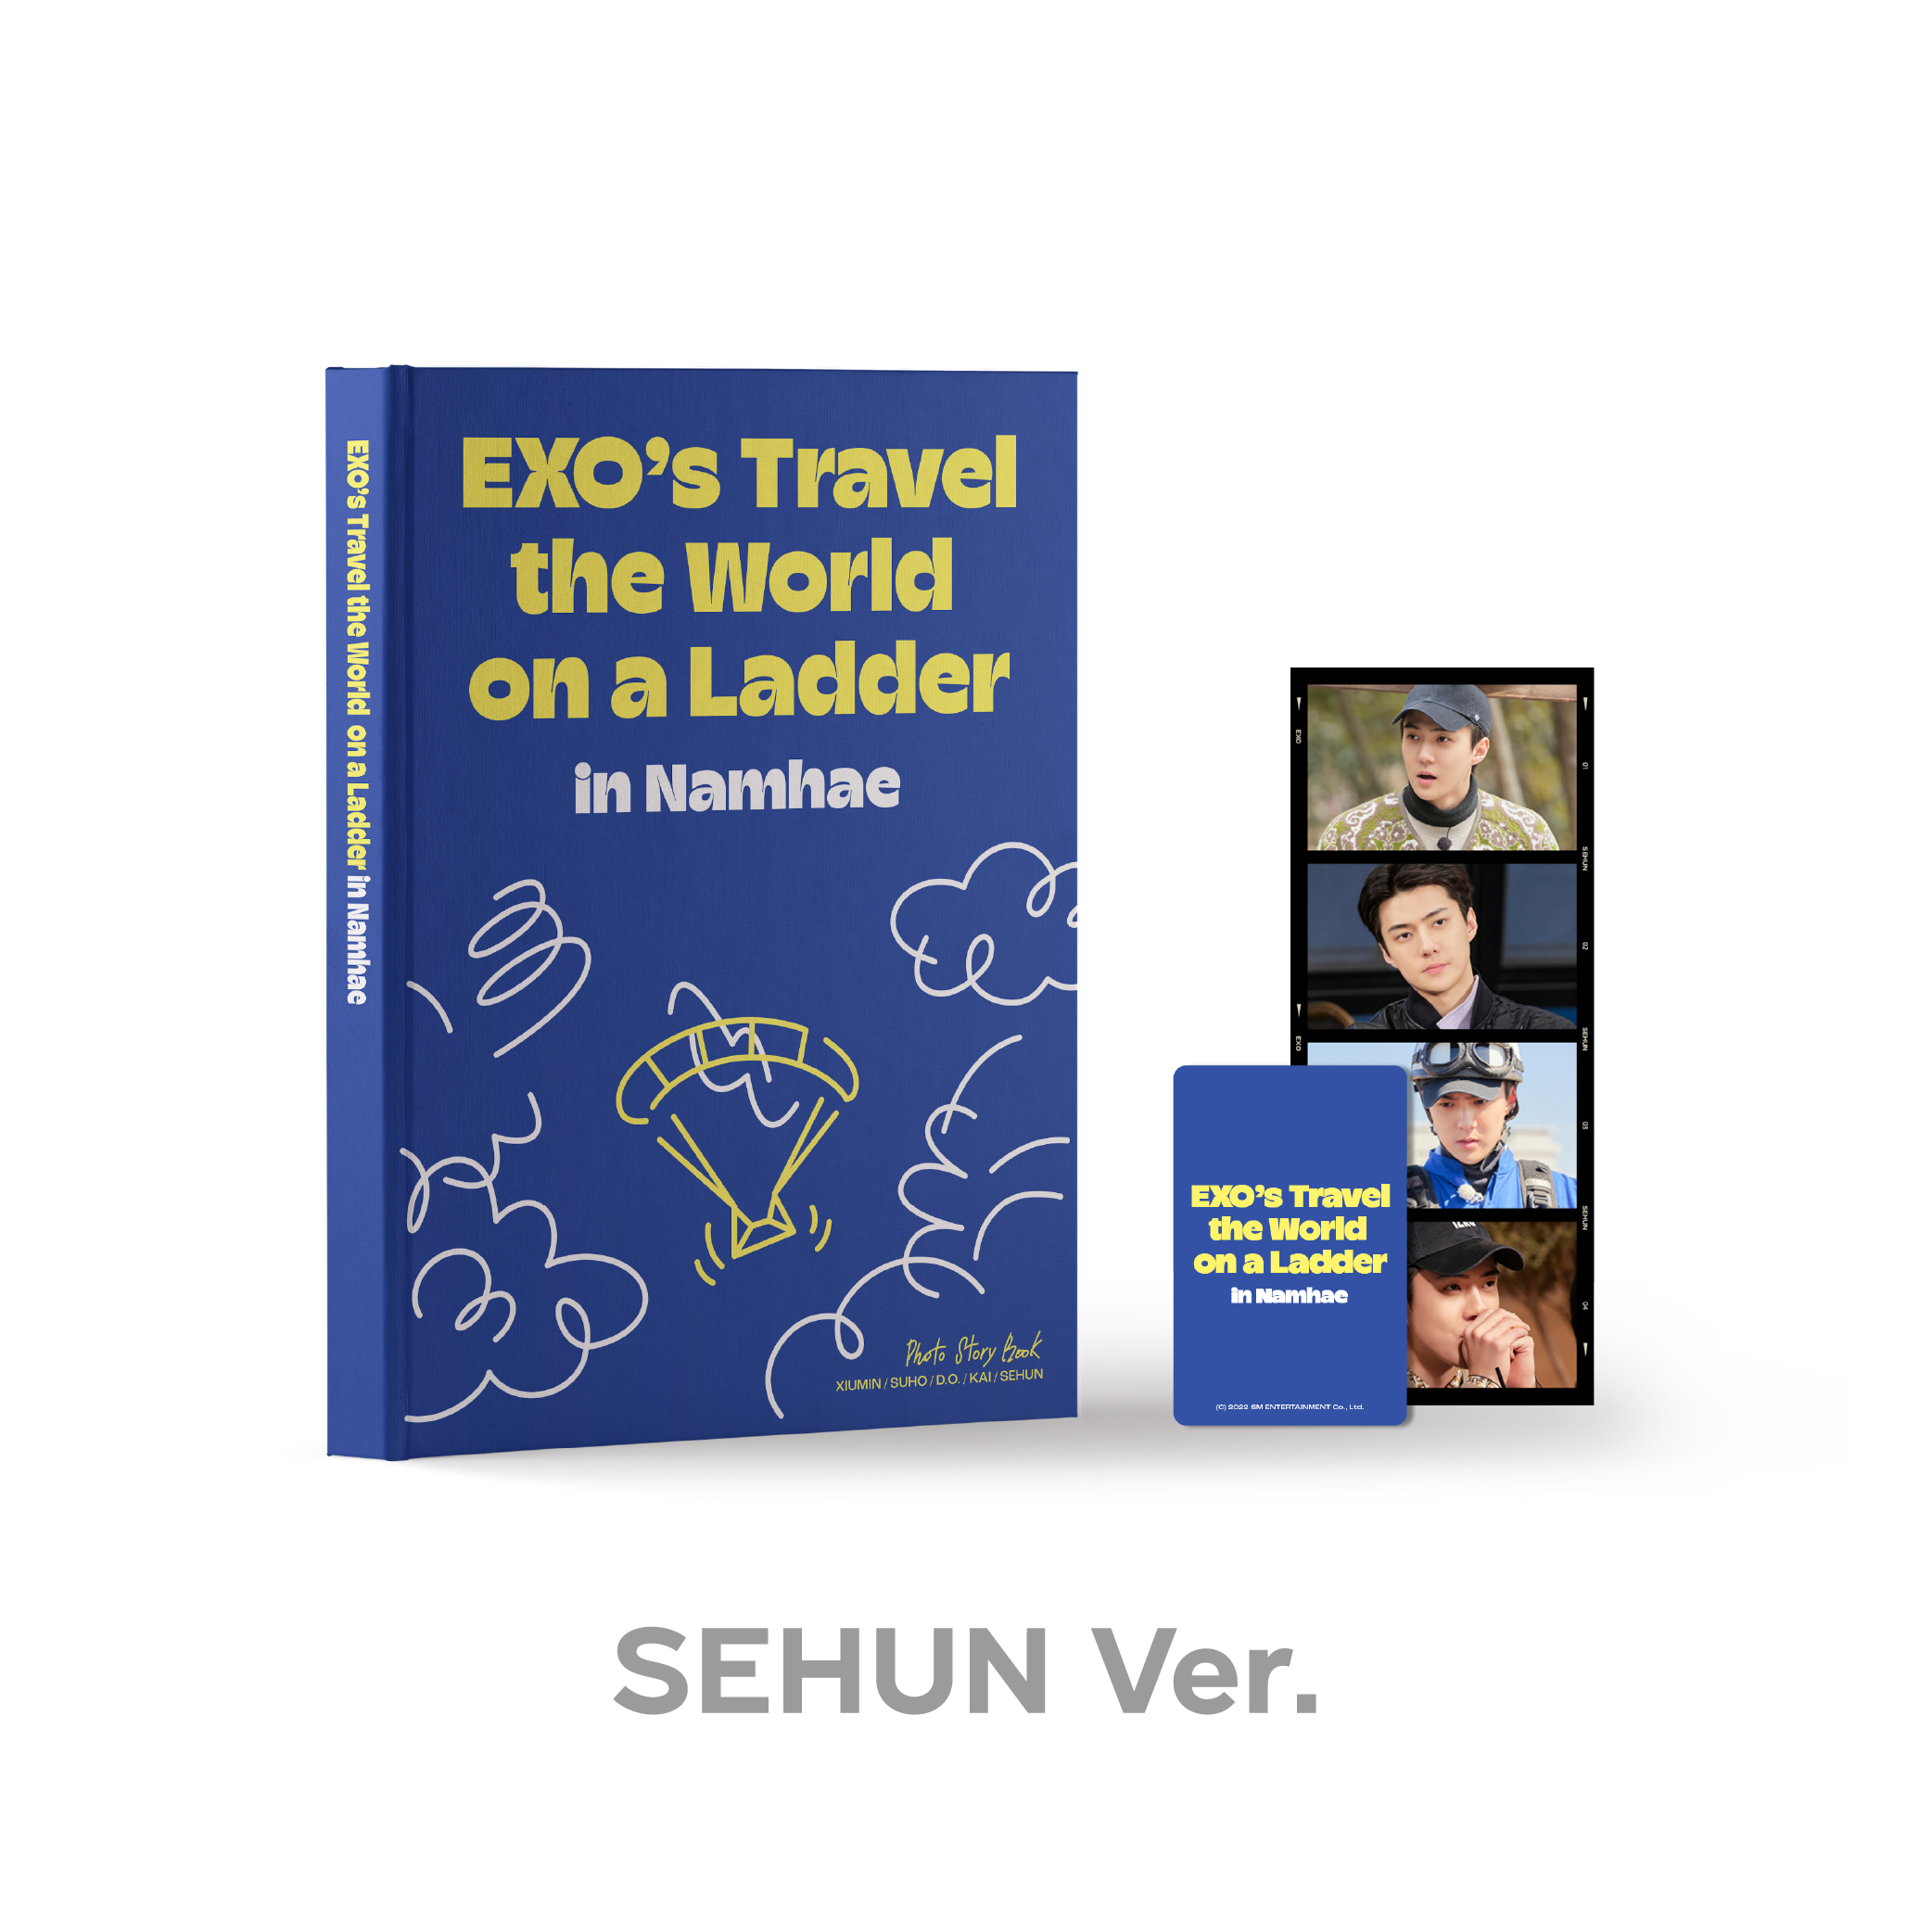 EXO(엑소) - <엑소의 사다리 타고 세계여행 - 남해 편> PHOTO STORY BOOK [SEHUN Ver.]